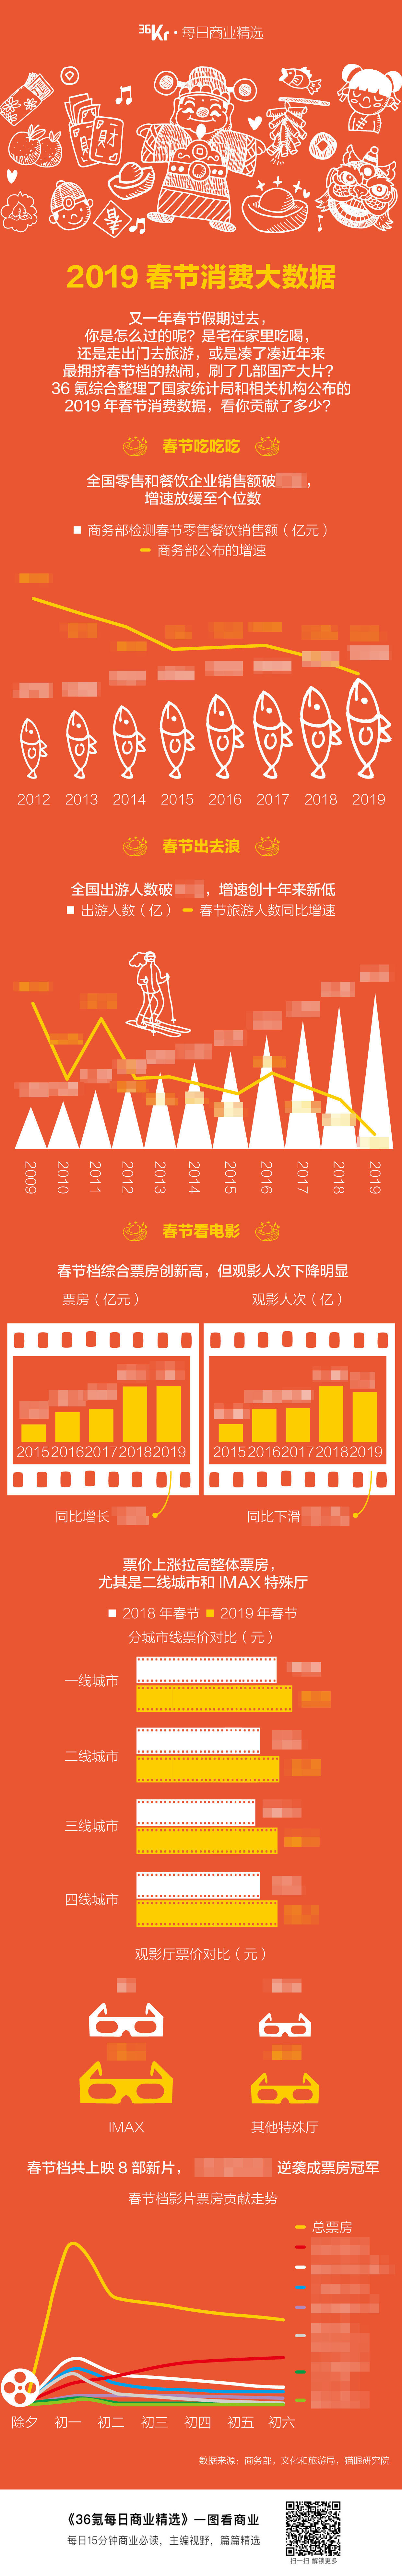 氪星晚报 | 四季度iPhone中国出货量同比降20%​​；京东27亿元收购北京翠宫饭店；《流浪地球》创IMAX国产片票房新高